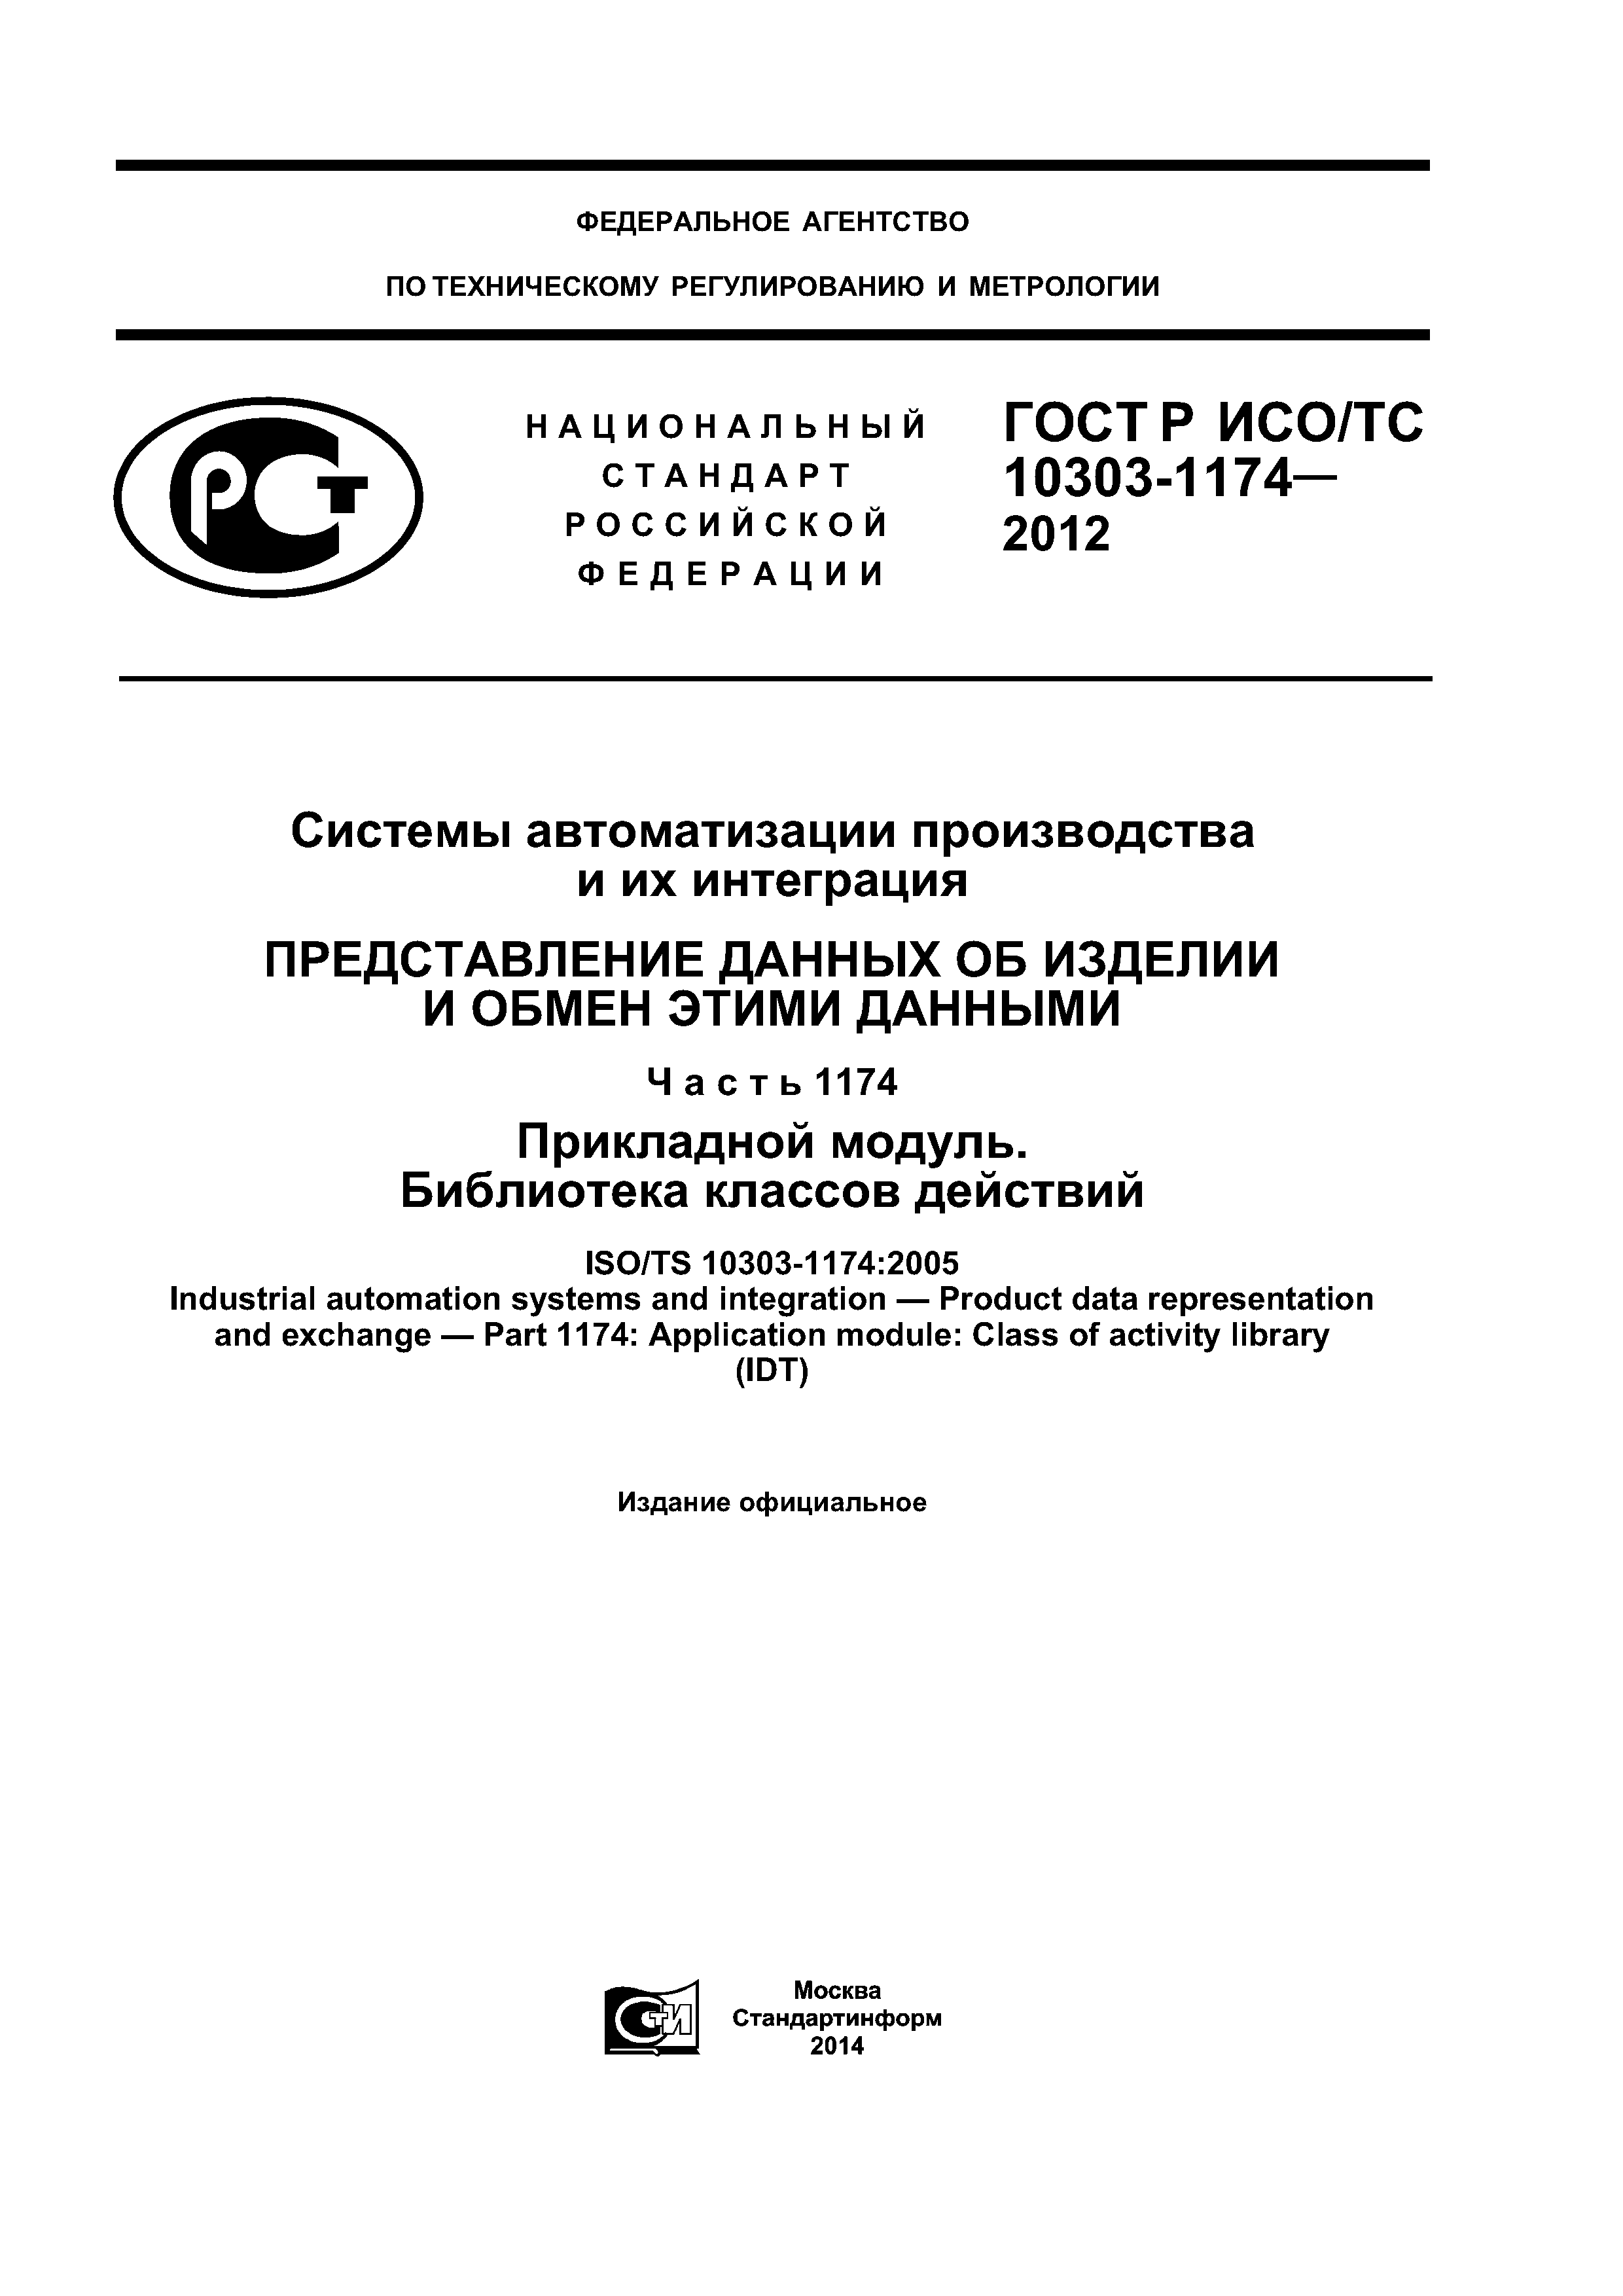 ГОСТ Р ИСО/ТС 10303-1174-2012